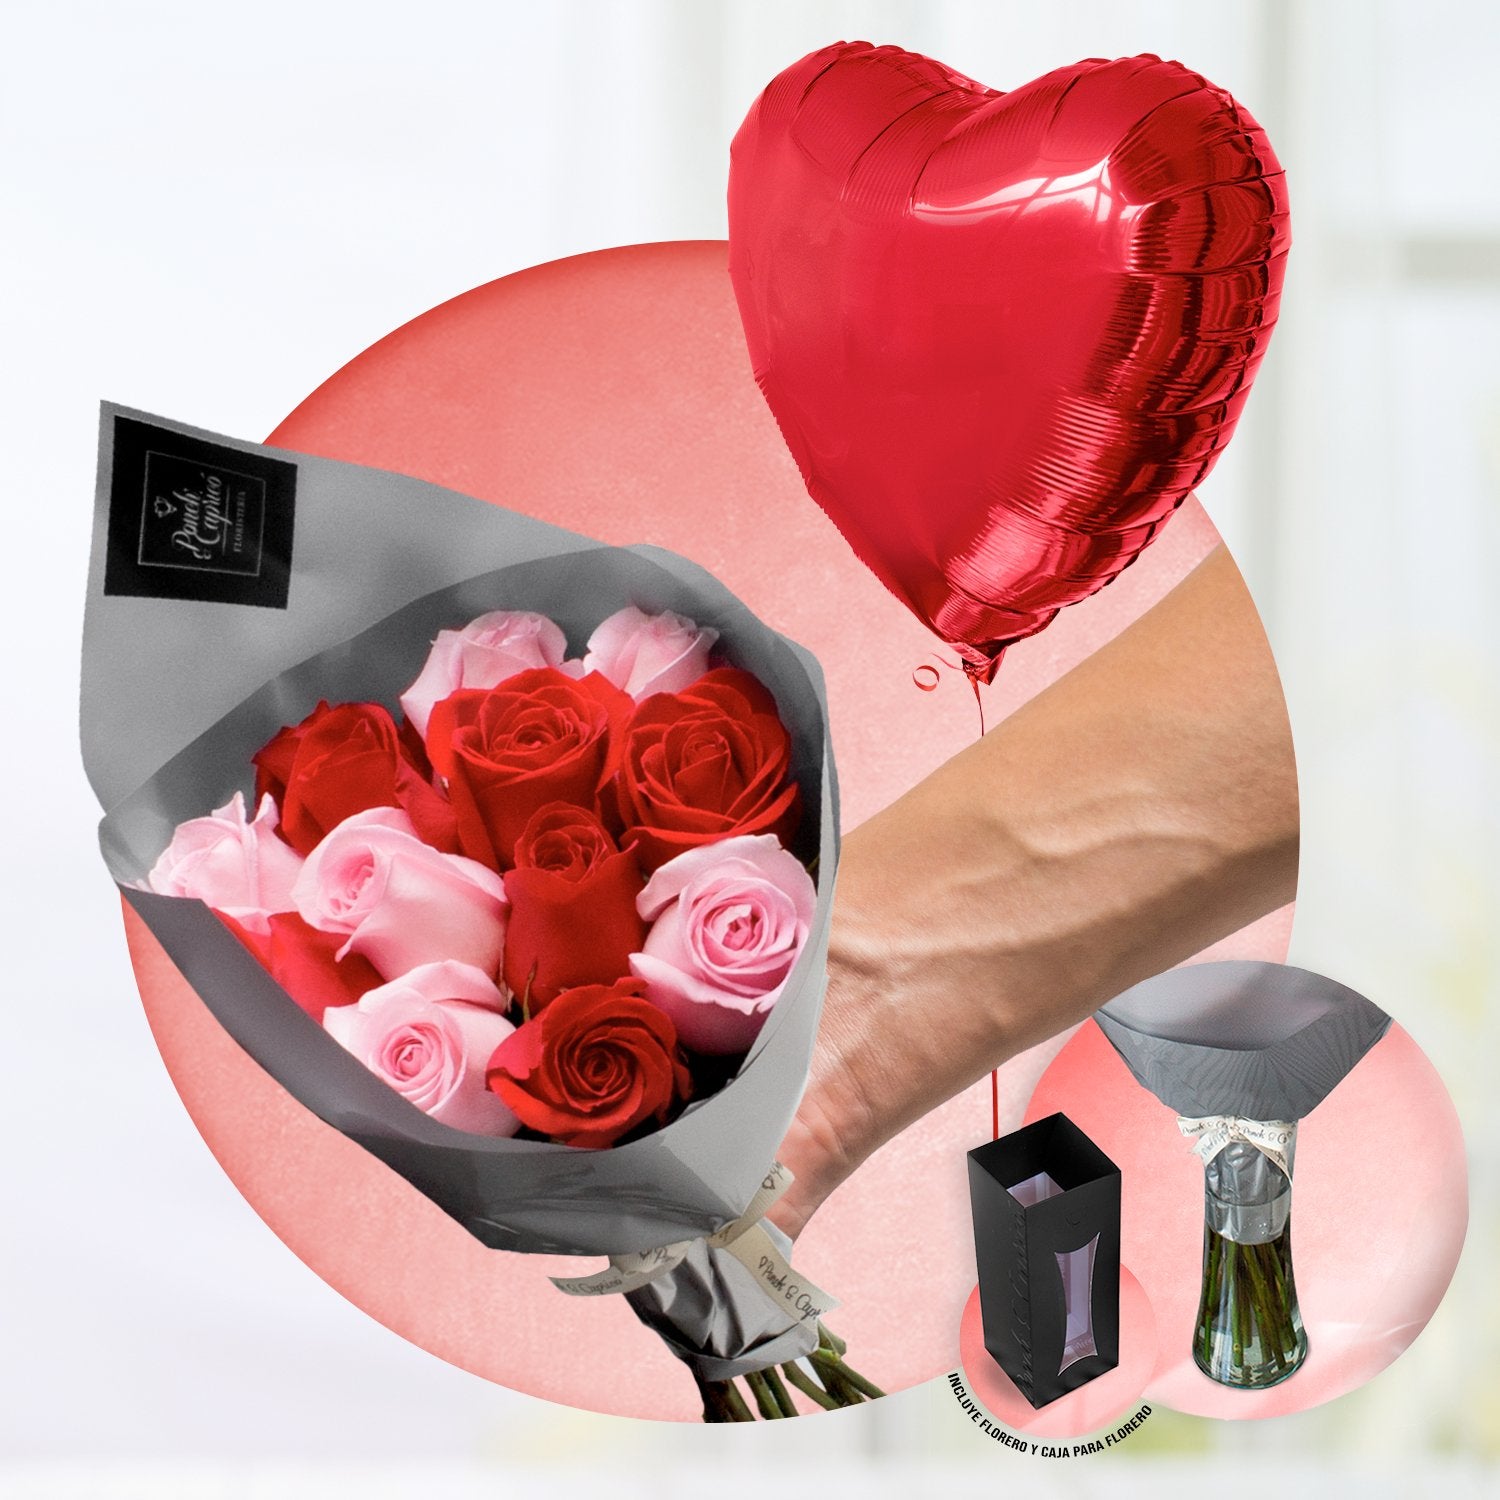 Ramillete de 12 rosas rojas y rosadas + Florero + Corazón Rojo de 18" inflado con helio